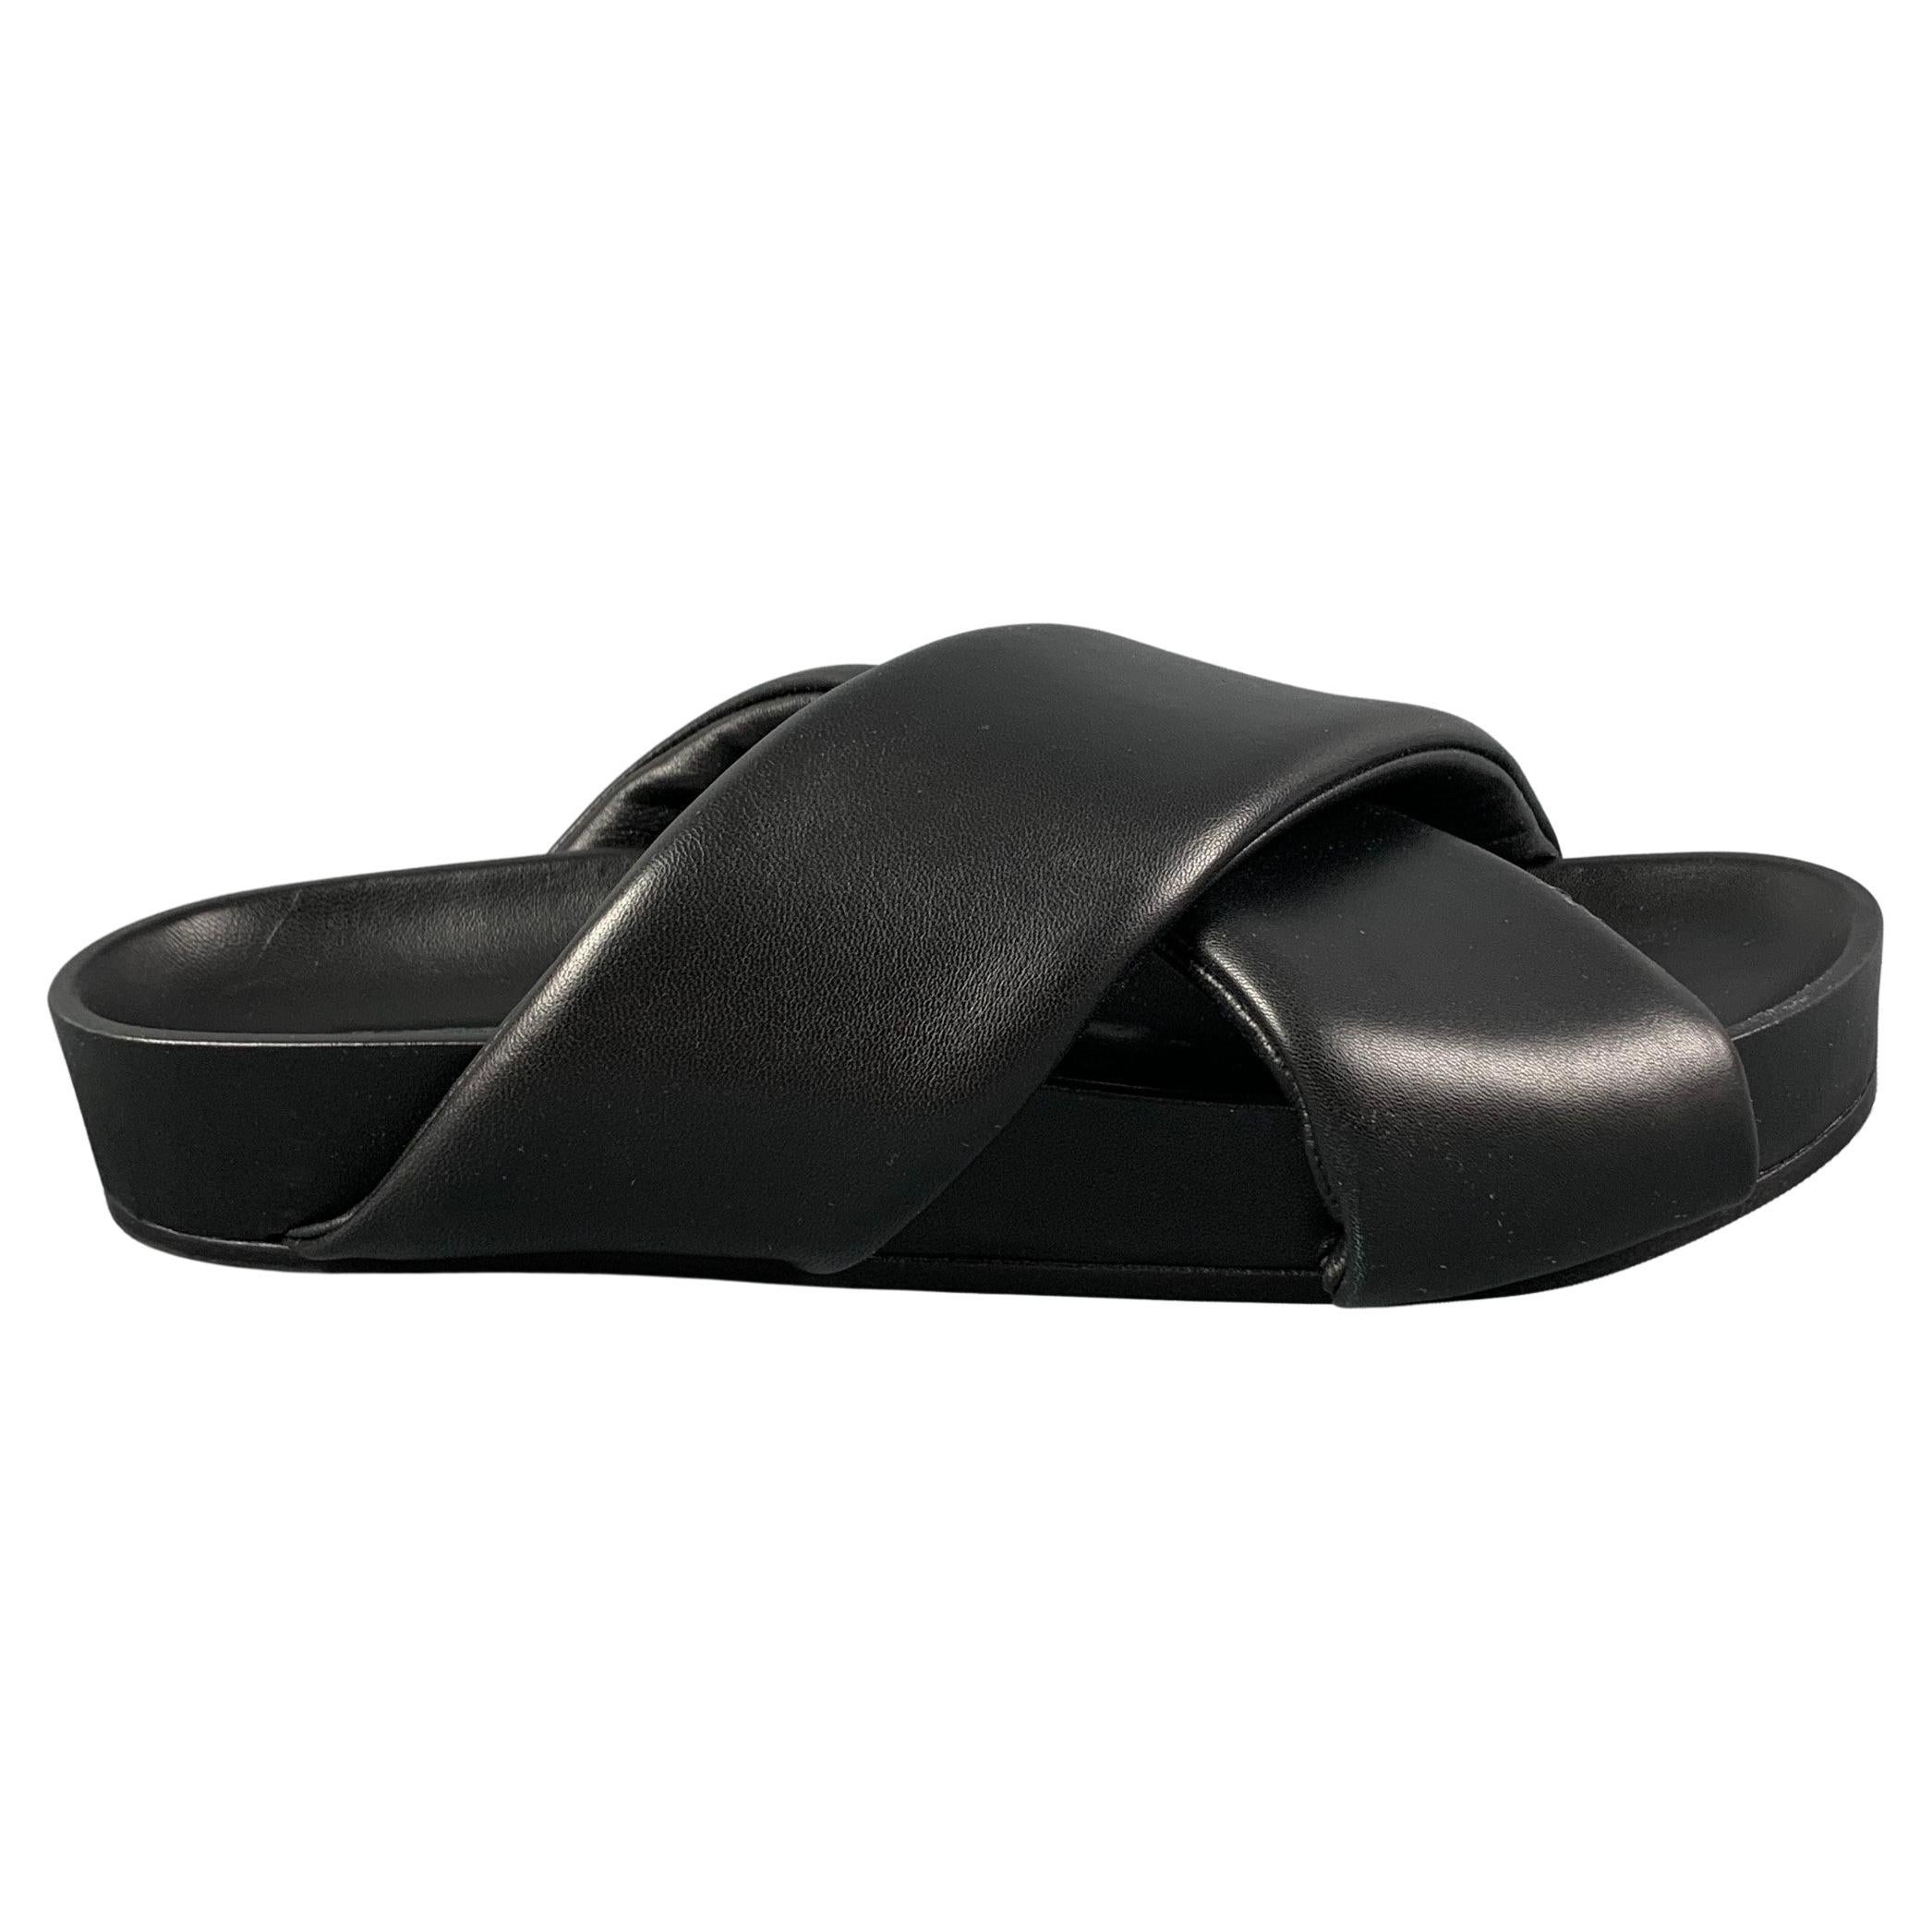 JIL SANDER Size 10 Black Leather Slip On Sandals